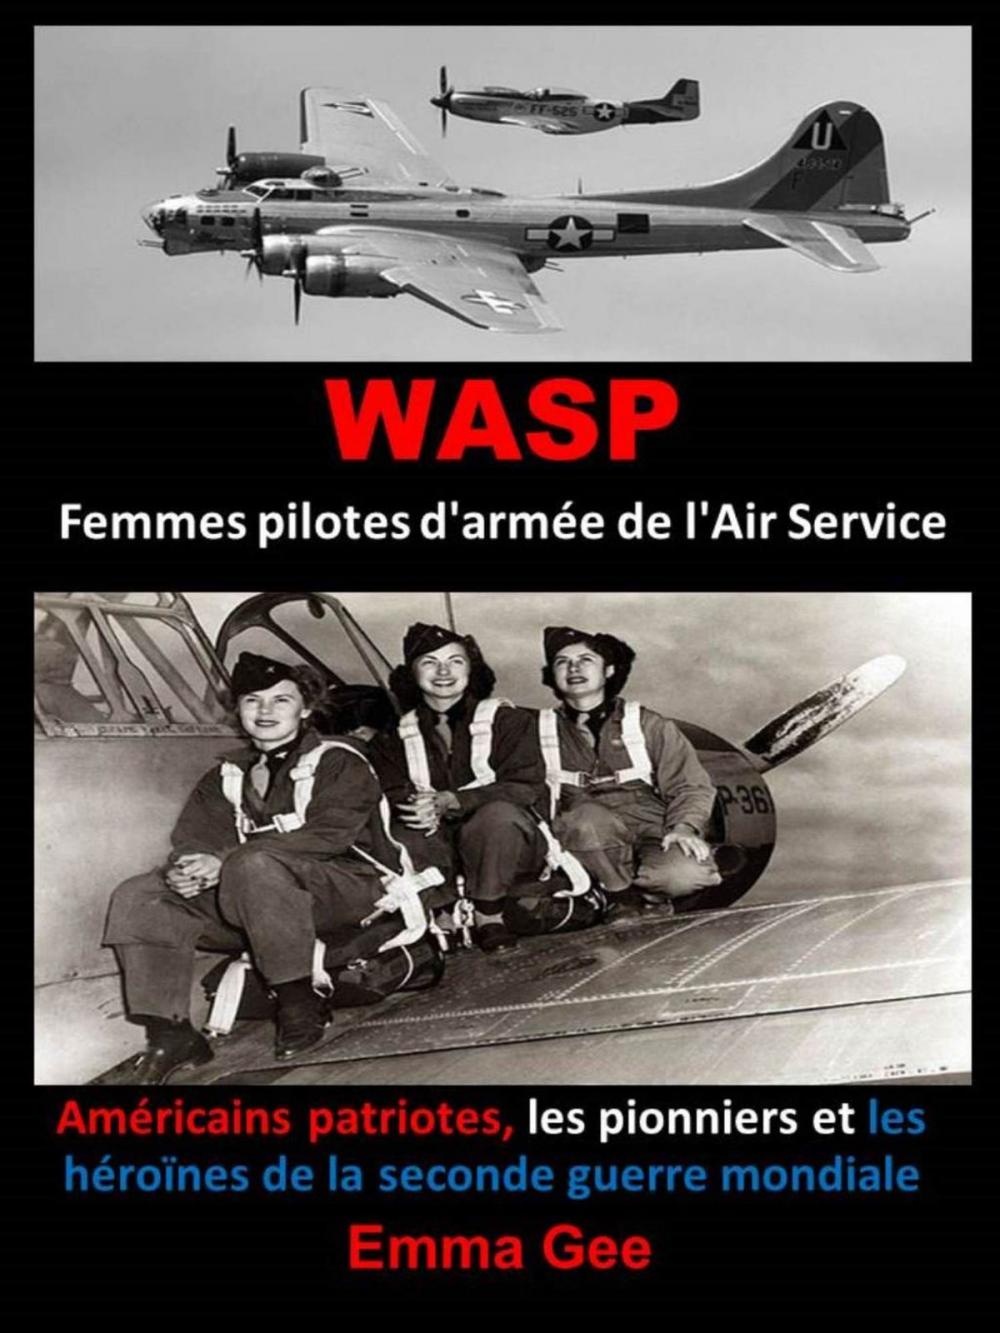 Big bigCover of WASP-Femmes pilotes d'armée de l'Air Service-Américains patriotes, les pionniers et les héroïnes de la seconde guerre mondiale